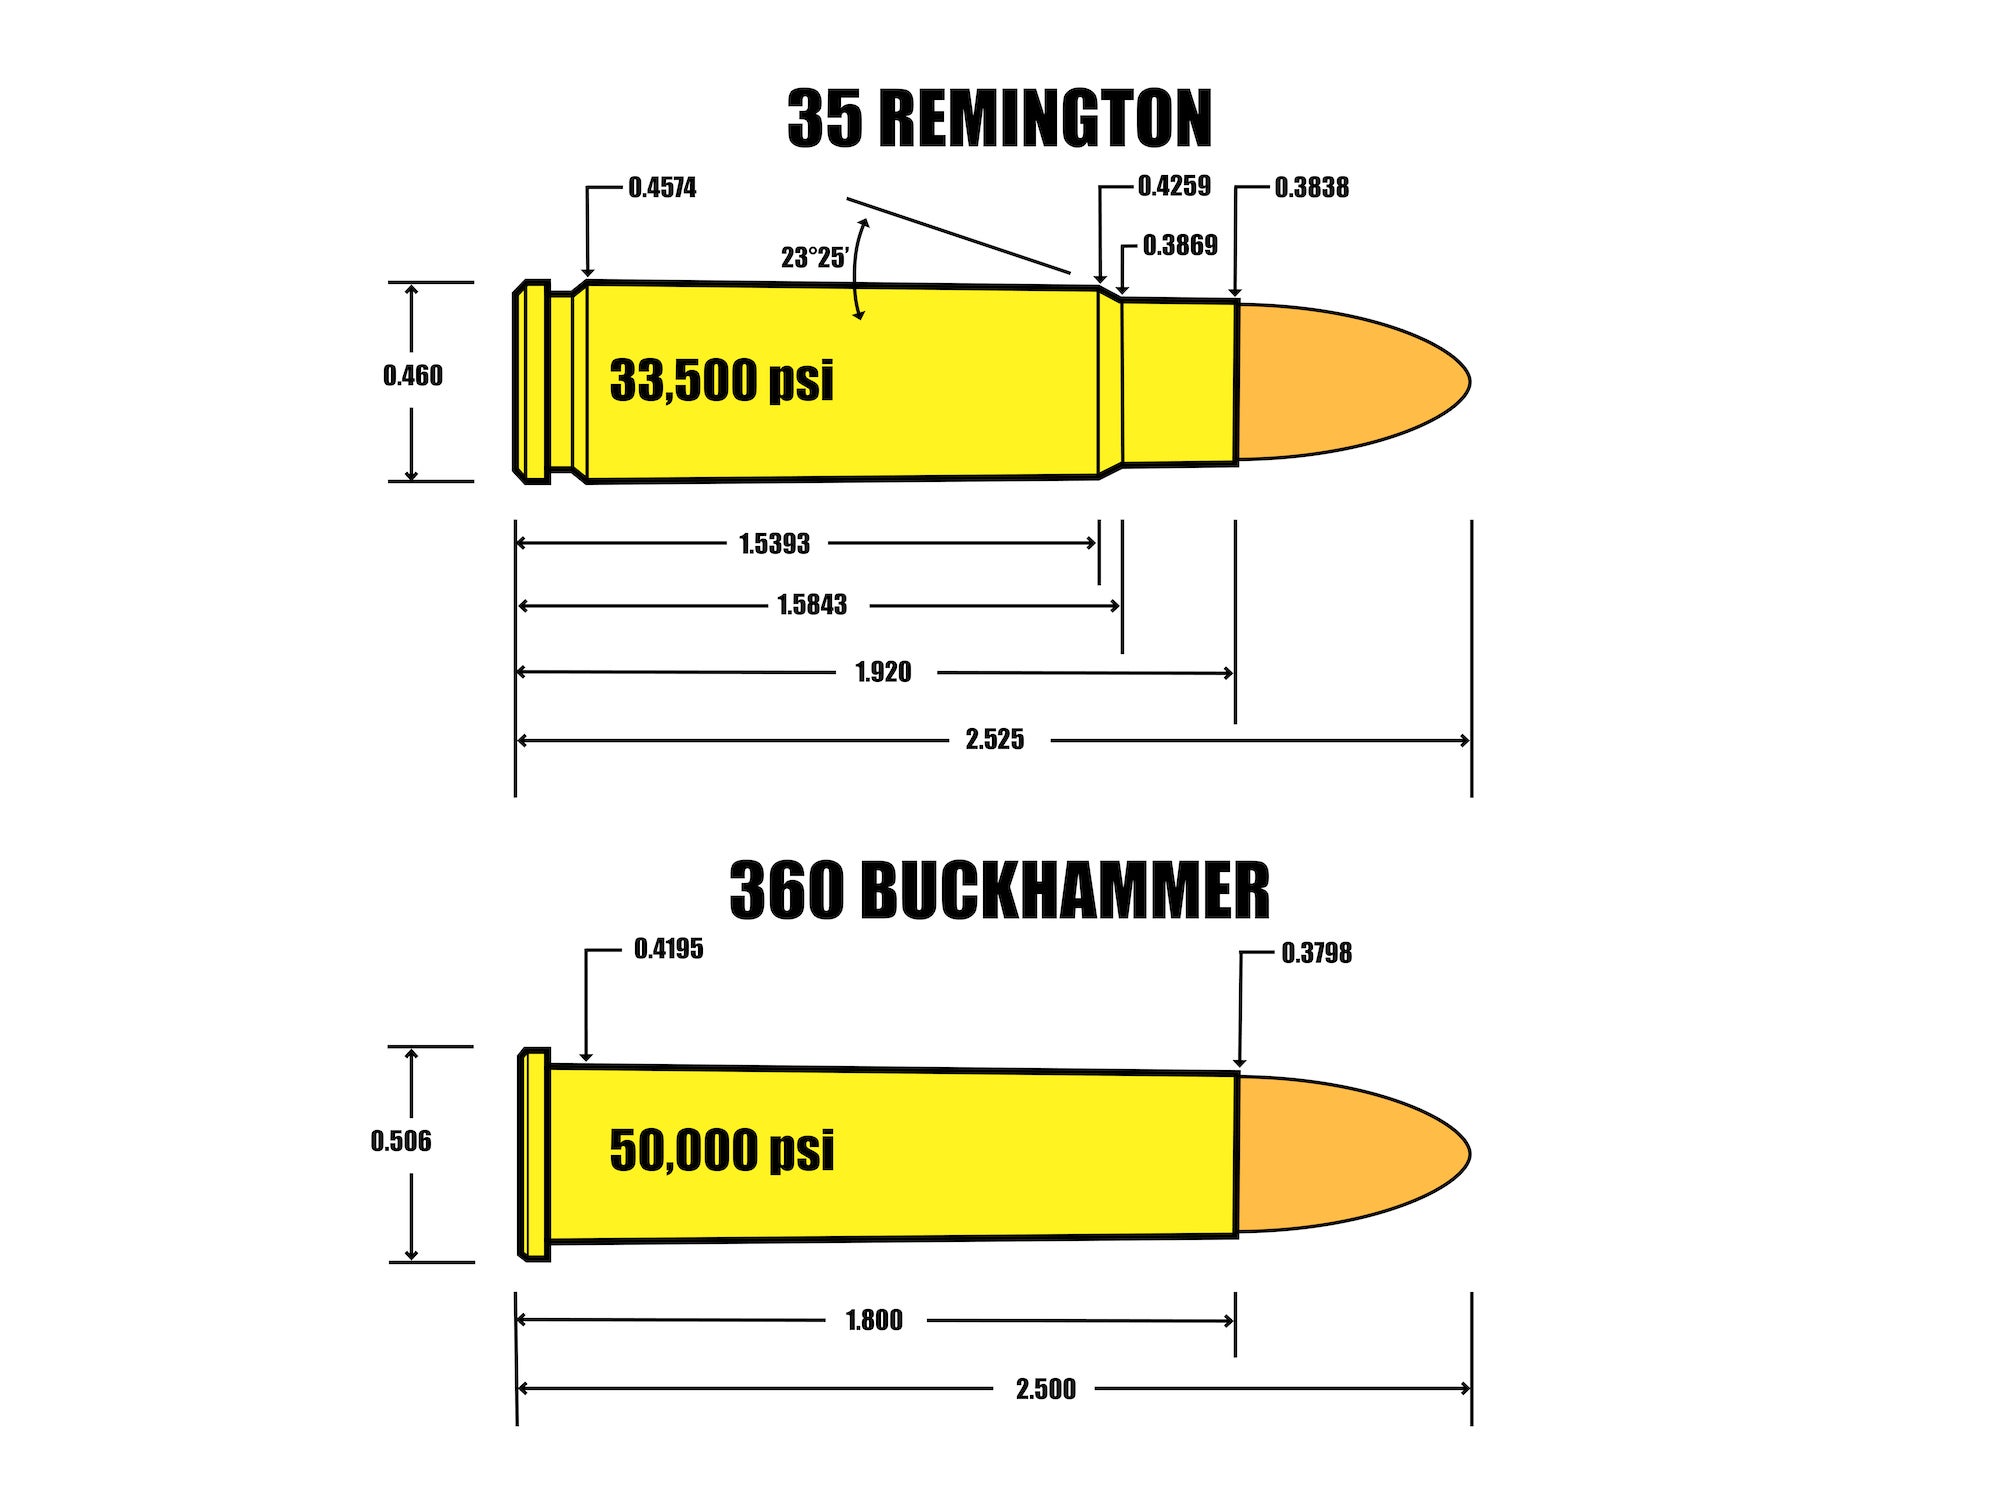 Une illustration comparant le 35 Remington au 360 Buckhammer.